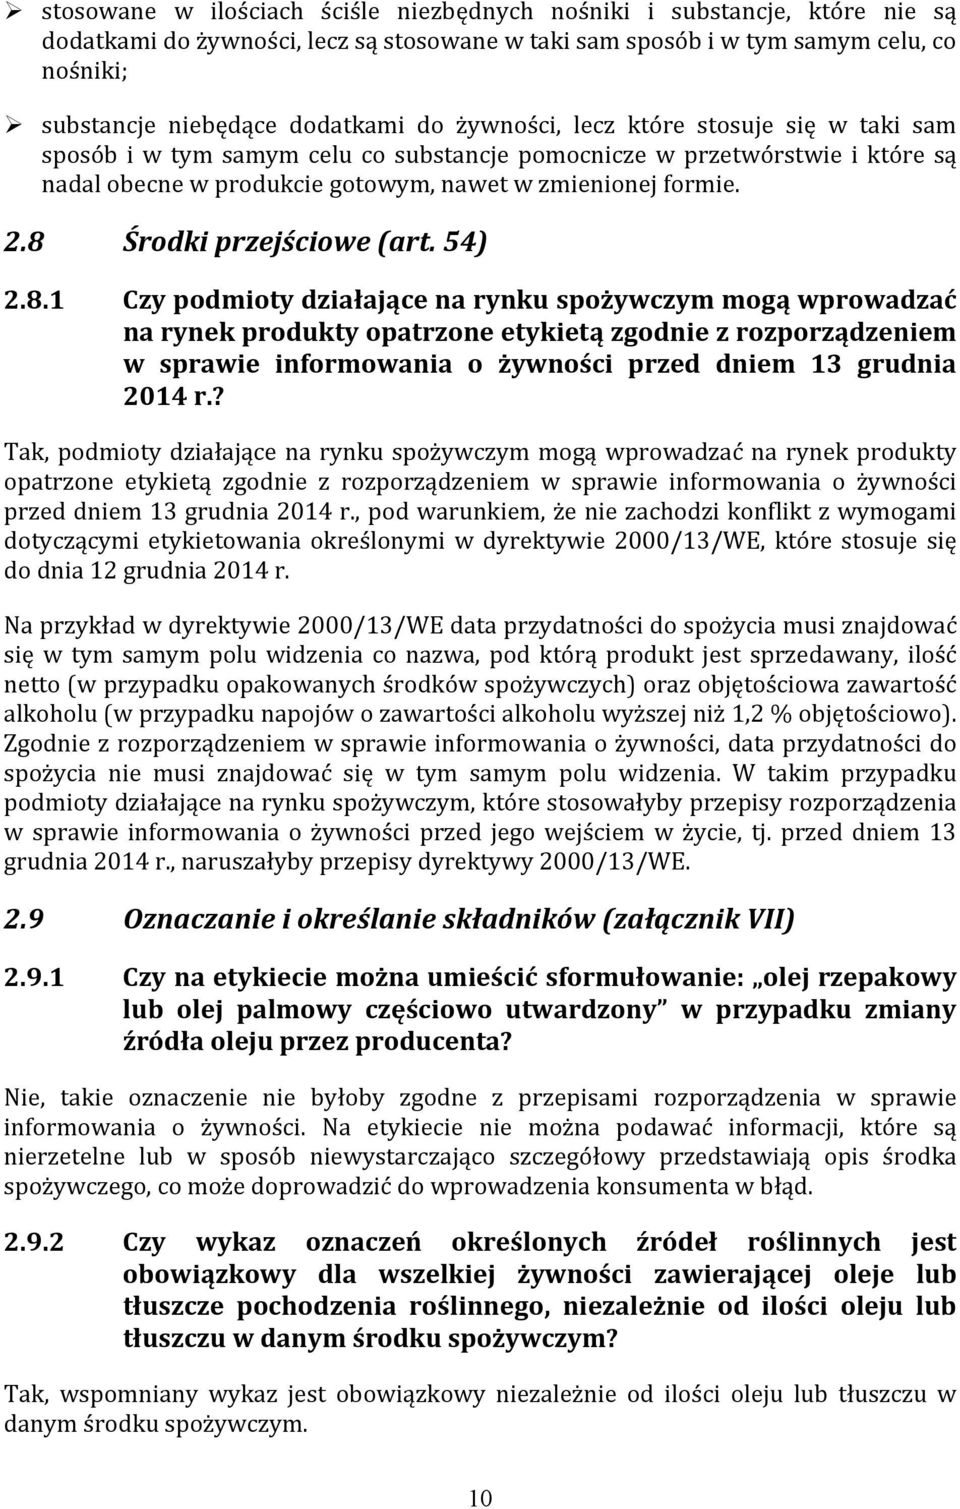 8 Środki przejściowe (art. 54) 2.8.1 Czy podmioty działające na rynku spożywczym mogą wprowadzać na rynek produkty opatrzone etykietą zgodnie z rozporządzeniem w sprawie informowania o żywności przed dniem 13 grudnia 2014 r.